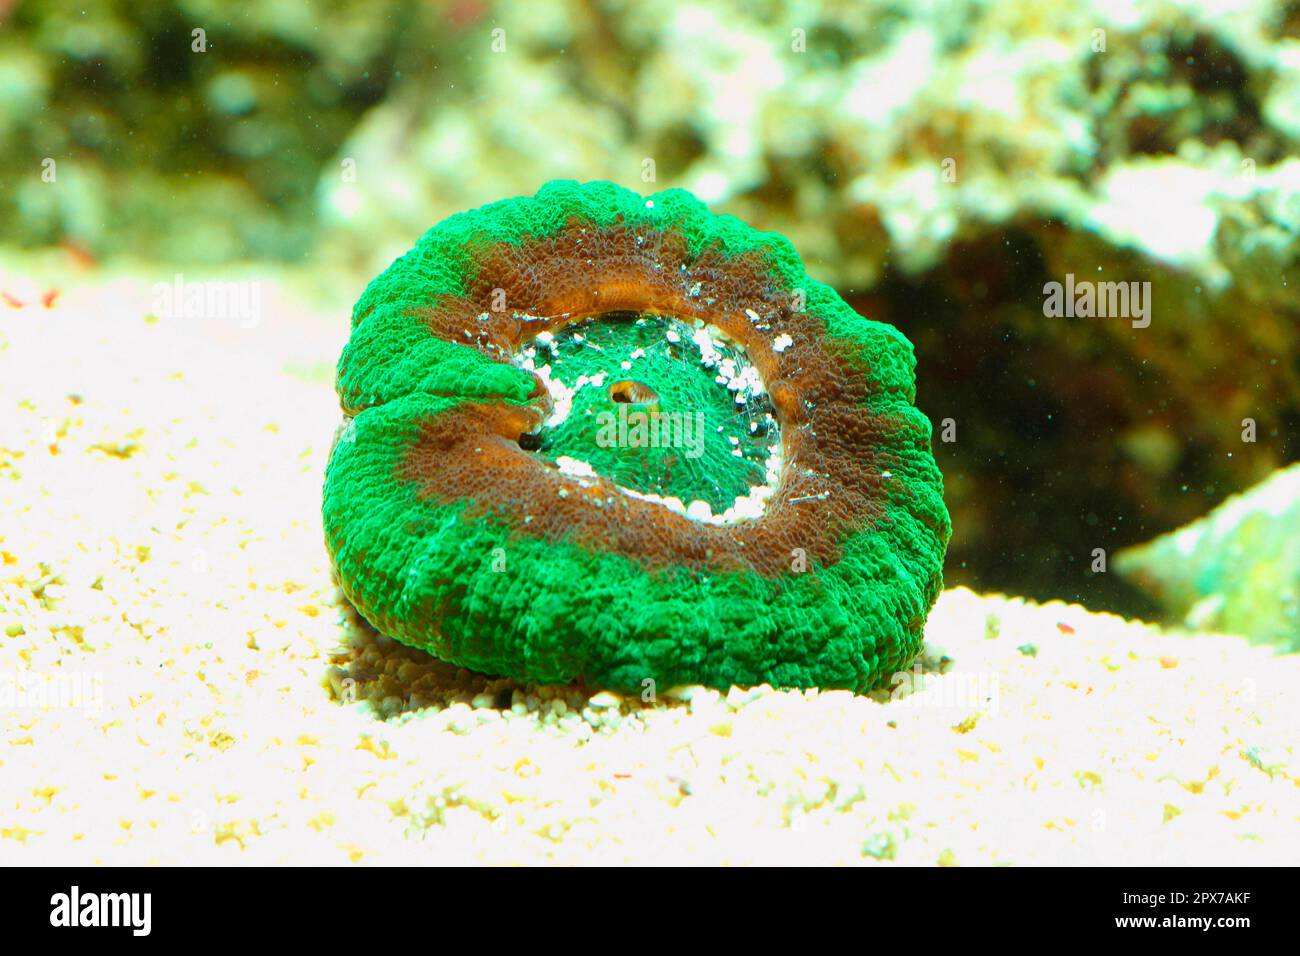 Stony coral (Scolymia australis) Stock Photo